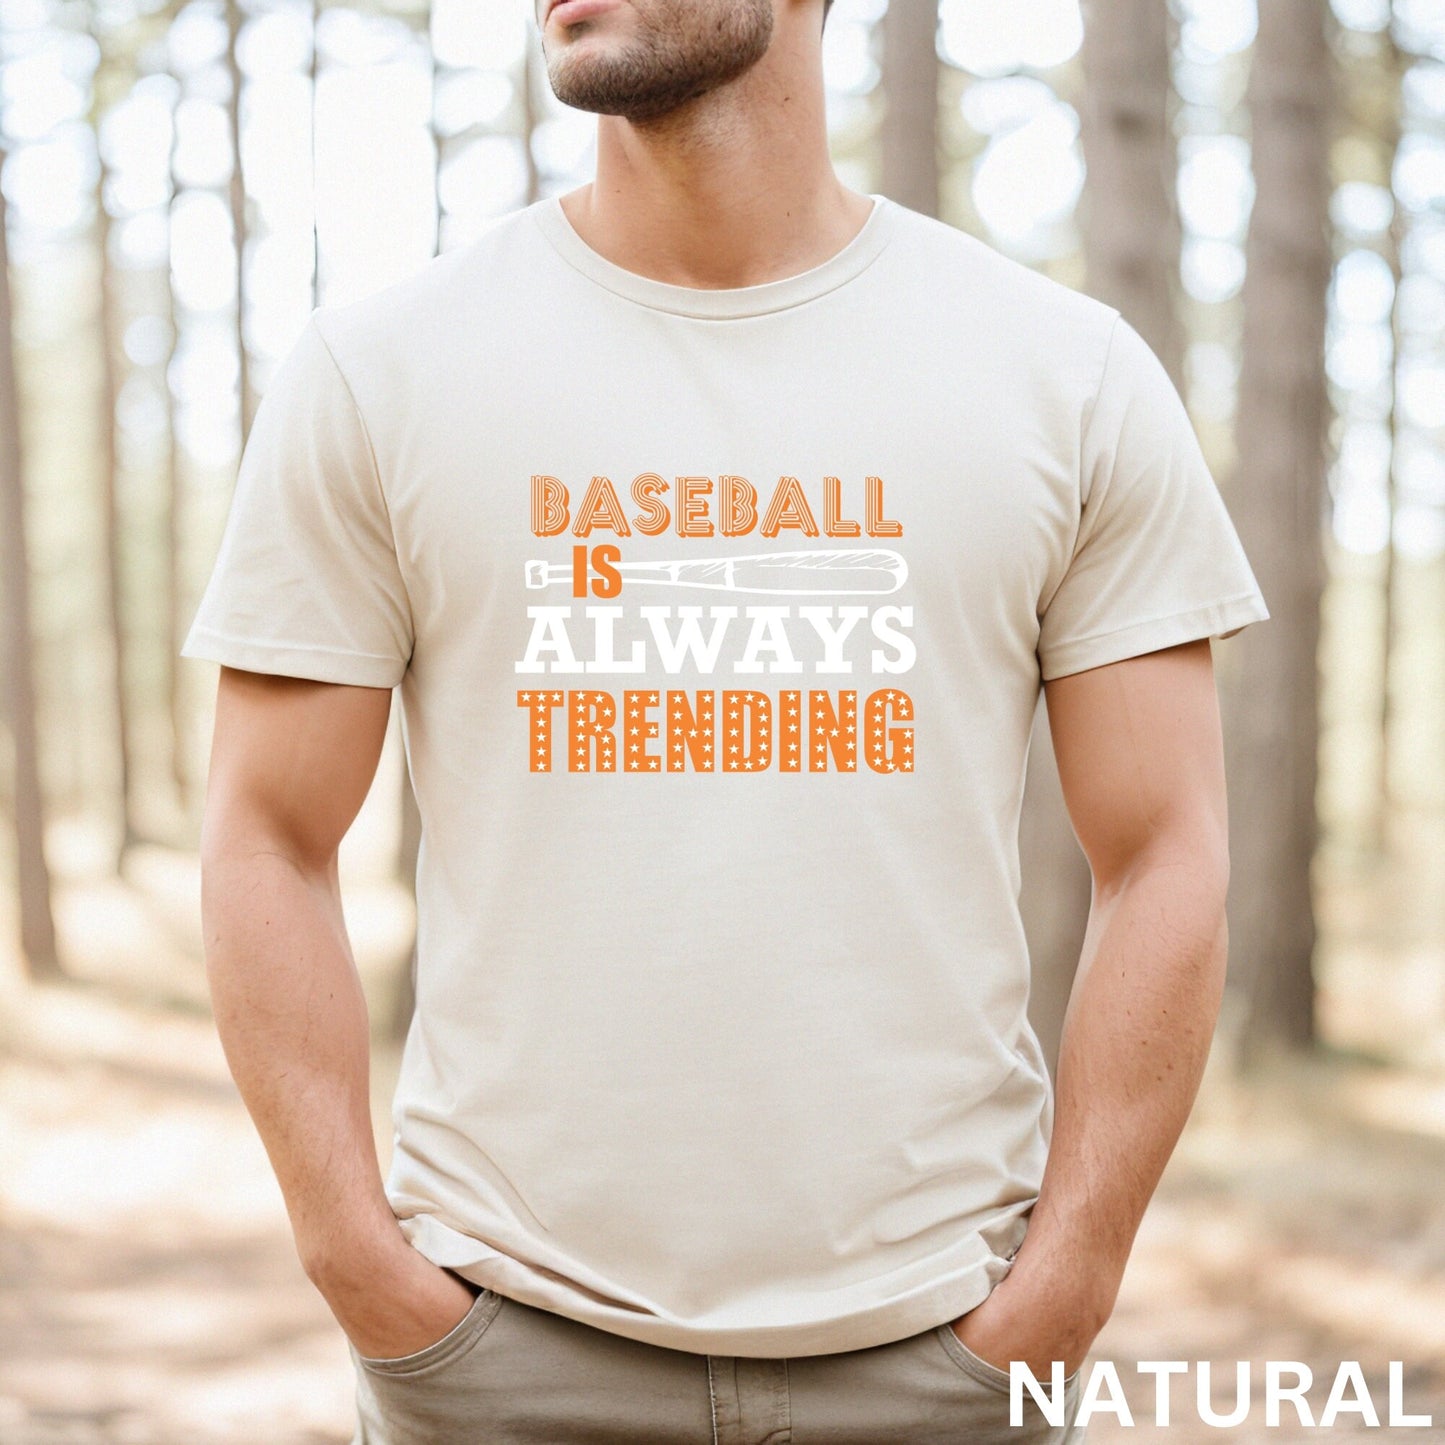 Baseball Shirt, Play Ball Shirt, Baseball Tee, Baseball Mama, Baseball Fan Shirt, Baseball Mom TShirt, Game Day Shirt, Baseball Game Shirt